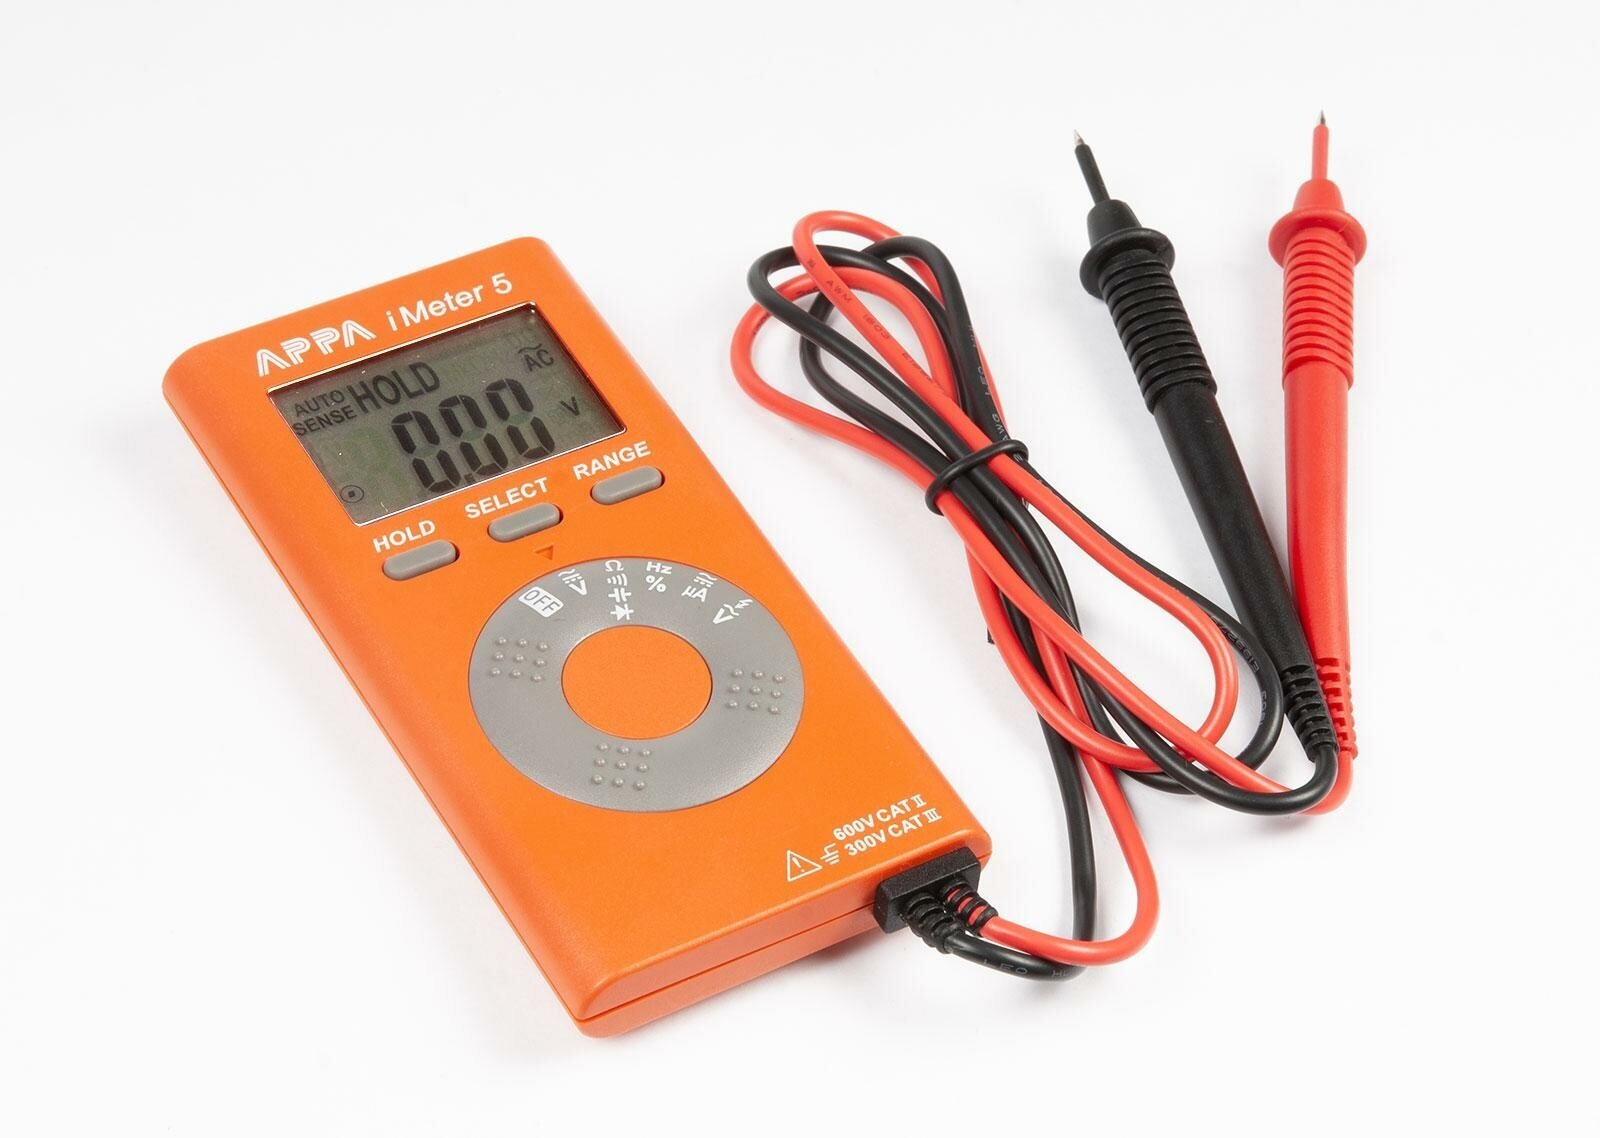 Мультиметр APPA iMeter5 напряжение пост/перем: 600 В/600 В, 0,004 А